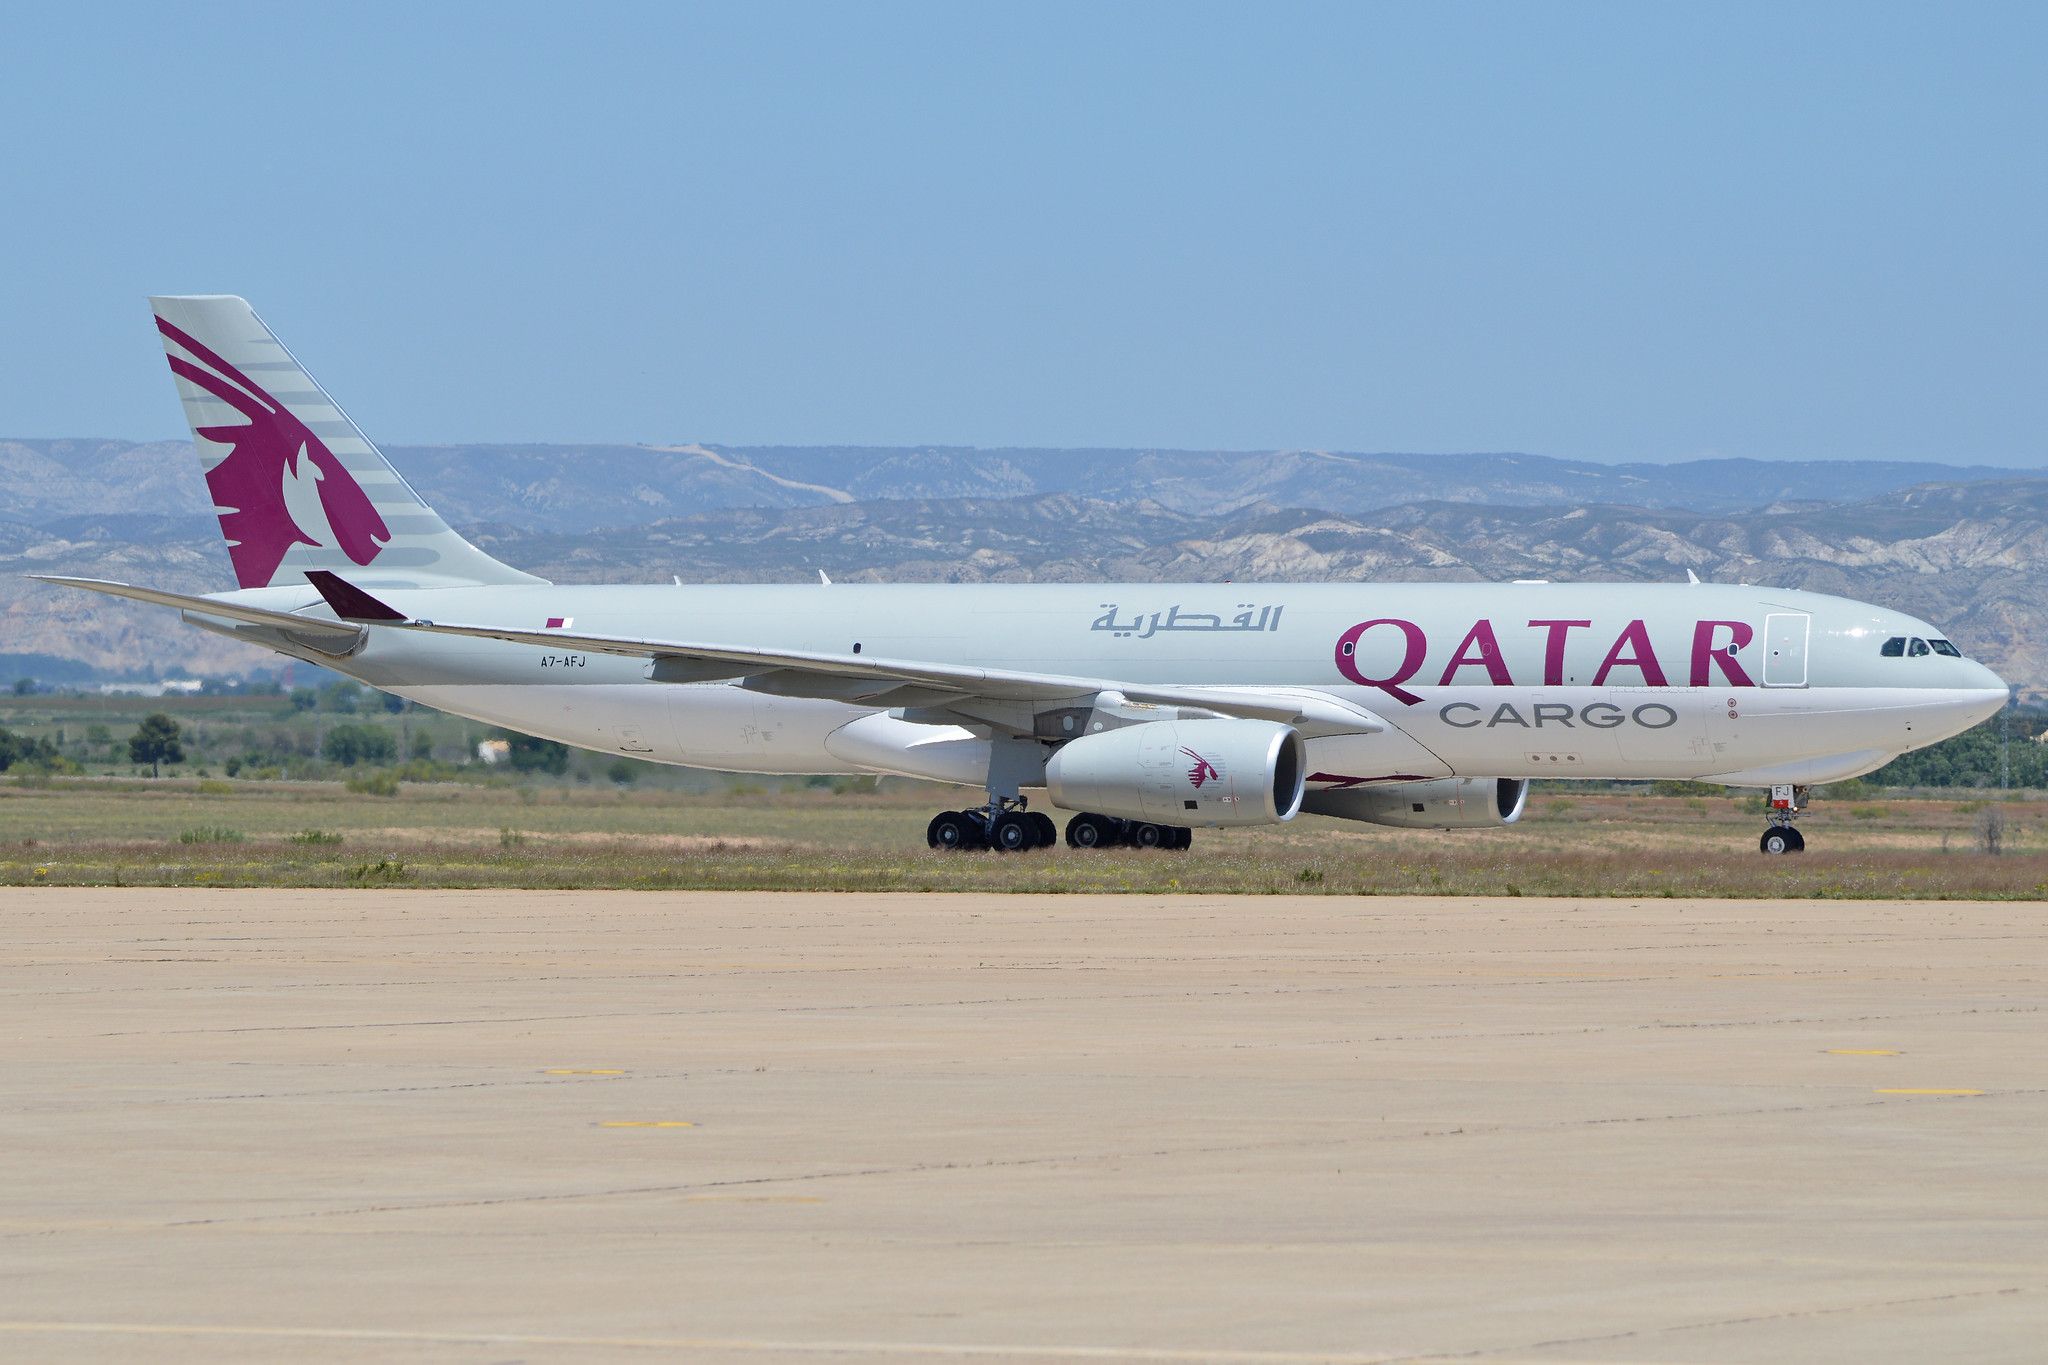 Qatar cargo plane at Zaragoza